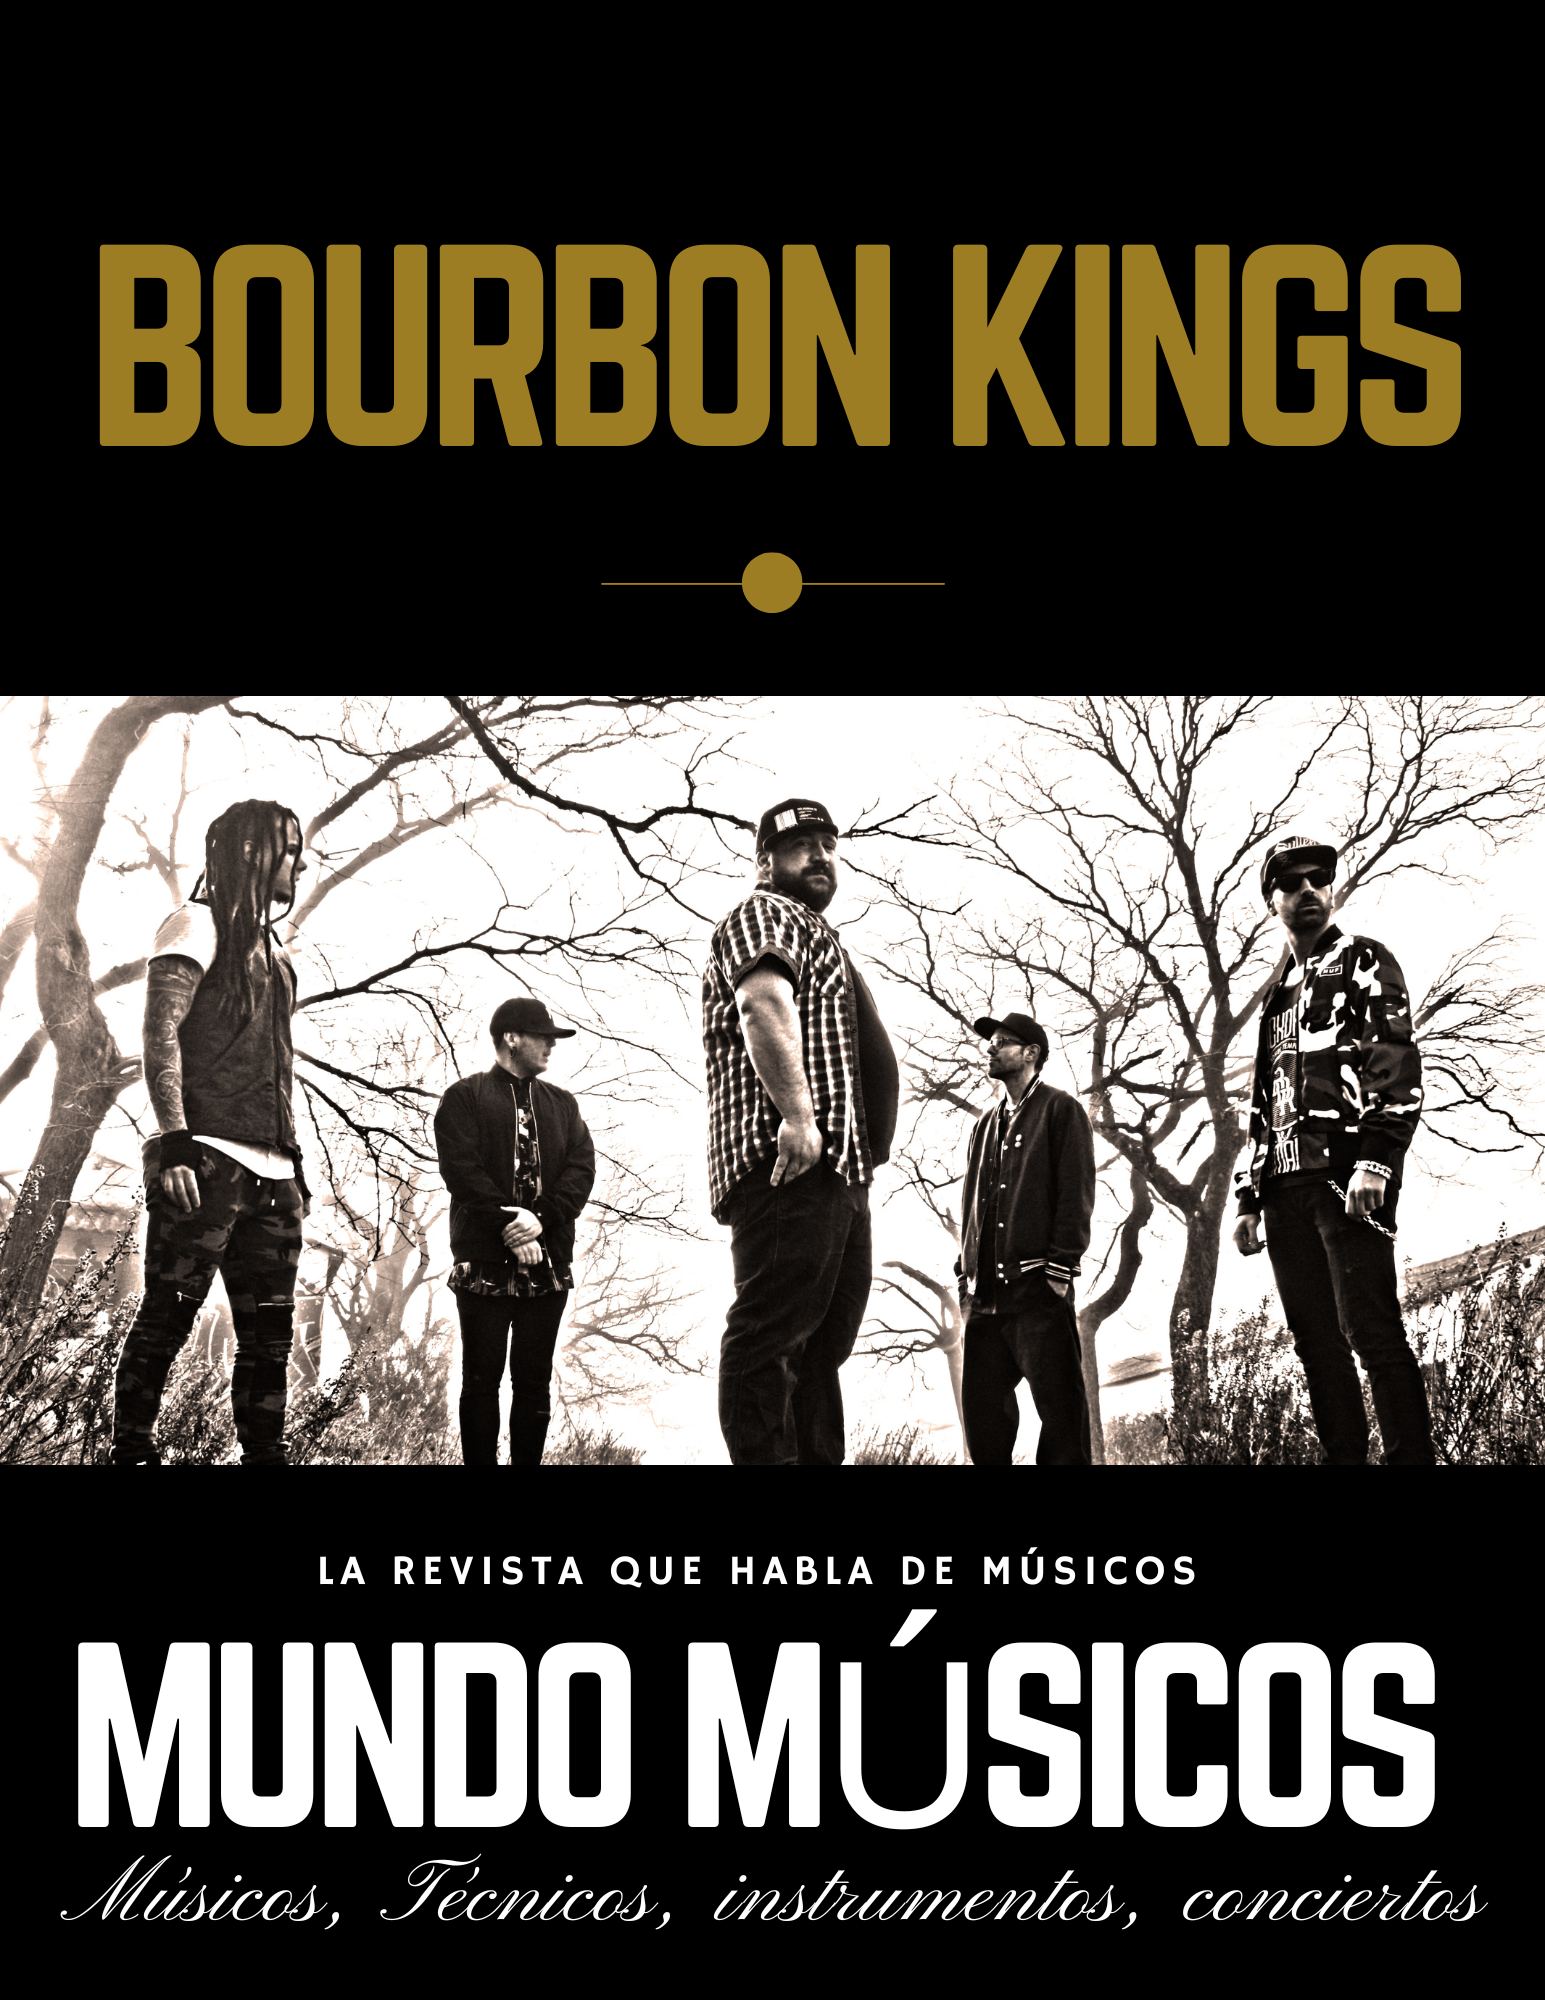 Bourbon Kings «La música es una vía de comunicación, una terapia»